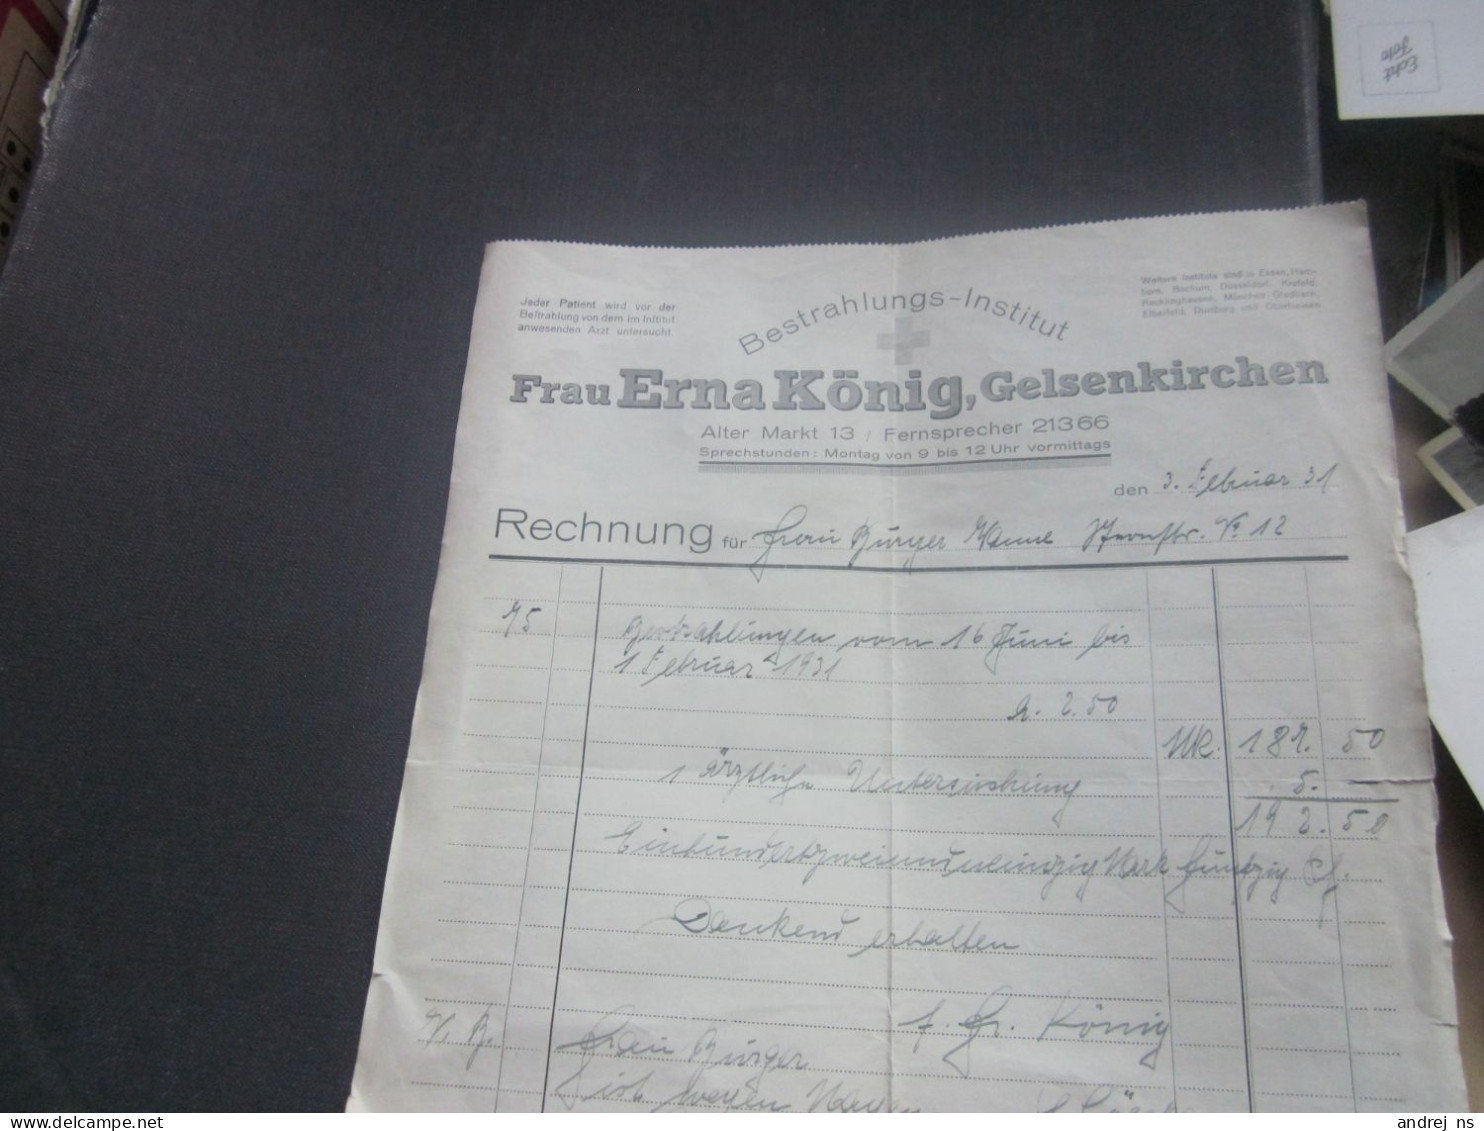 Bestrahlungs Institut Frau Erna Konig Gelsenkirchen - 1900 – 1949